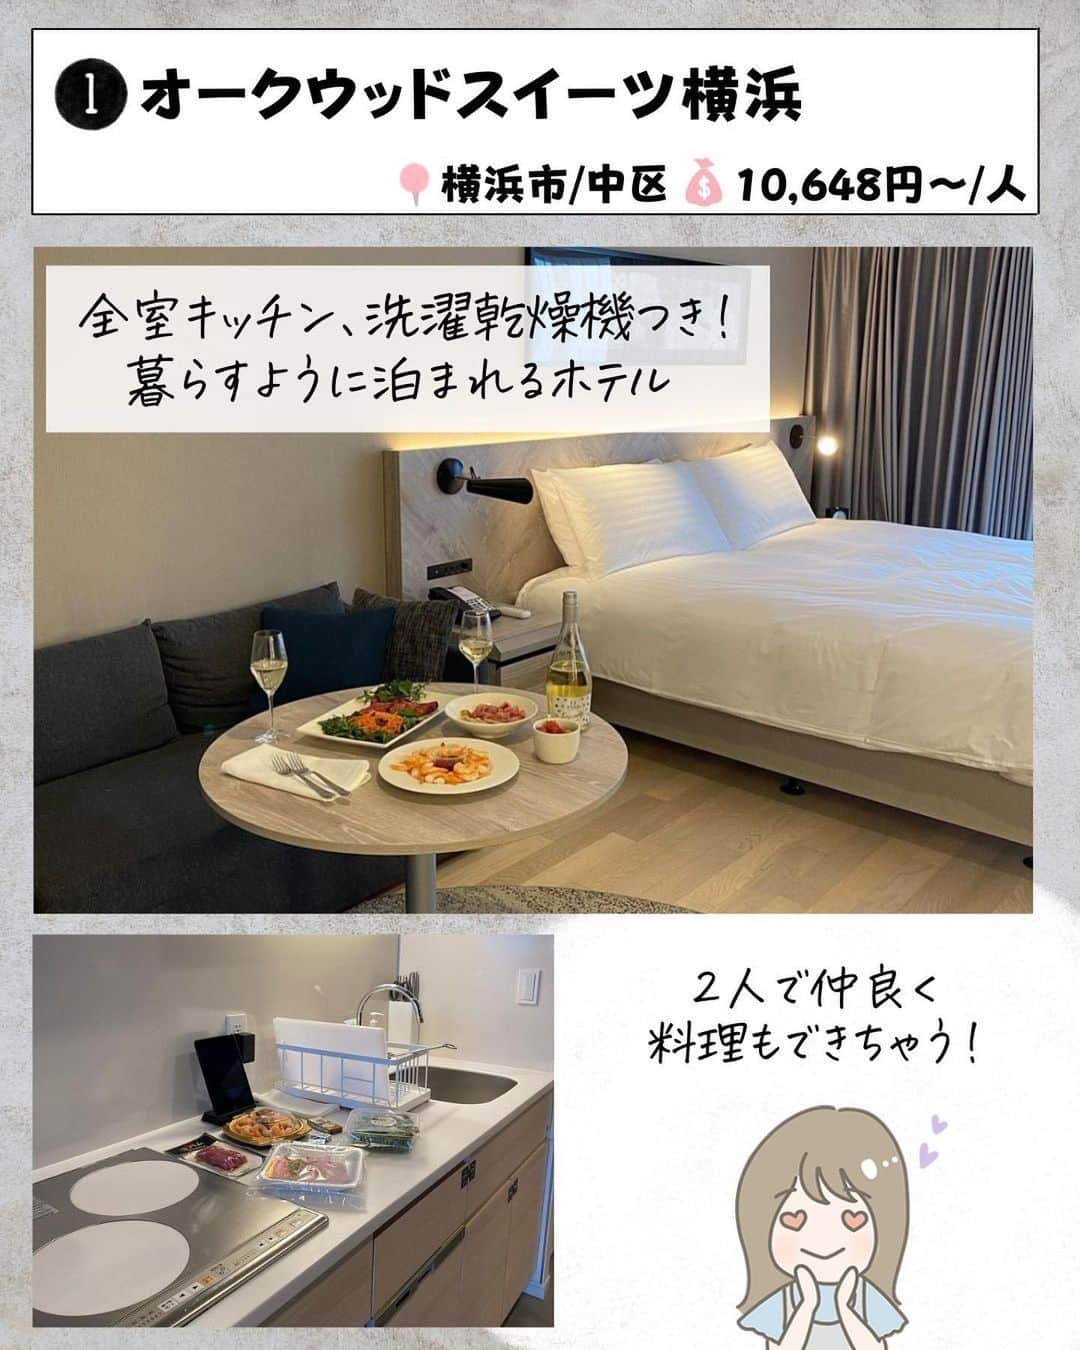 ぴち家さんのインスタグラム写真 - (ぴち家Instagram)「. お得を極めて旅に生きる夫婦、 ぴち家（@travelife_couple）です。 ⁡ 今回は「横浜デートでいきたい推し宿　7選」の特集です。  おしゃれなデートの定番スポット「横浜」✨ 横浜は「夜景がきれいなホテル」でも有名ですよね✨😊  中華街でおいしいランチを食べたら 夜は最高の夜景が見れるホテルに宿泊！ 忘れられない記念日になること間違いなし！！  特別な日には横浜デートオススメだよ～😊👍🏻 ⁡ ※ホテル価格は楽天トラベルで検索した最安値を記載しています。 時期により変動があるため参考程度としてください！ ⁡ 【𝕚𝕟𝕗𝕠𝕣𝕞𝕒𝕥𝕚𝕠𝕟𓏗𓏗】 ❶ オークウッドスイーツ横浜 📍神奈川県横浜市中区北仲通5-57-2 （写真:@mana__00210様より）  ❷ 三井ガーデンホテル横浜みなとみらいプレミア 📍神奈川県横浜市西区みなとみらい3-3-3 ⁡（写真:@juno.36様　@__ay.01_様より）  ❸ ザ・スクエアホテル横浜みなとみらい 📍神奈川県横浜市西区みなとみらい6-3-4 （写真:n_a_o1021様より）  ❹ シタディーンハーバーフロント横浜 📍神奈川県横浜市中区日本大通5-2 ⁡（写真:@travel_kanagawa_japan様　@ampm_456様より）  ➎ ホテル エディット 横濱 📍神奈川県横浜市中区住吉町六丁目78番地1 （写真:@eriii24krt様　@nao_coccochi様より）  ❻ ホテルアソシア新横浜 📍神奈川県横浜市港北区新横浜2-100-45 ⁡（写真:@chikosan_happyflowers様より）  ➐ ホテルプラム（HOTEL PLUMM）横浜 📍神奈川県横浜市西区北幸2-9-1 （写真:@moorie222824様より）  ーーーーーーーーーーーーーーーーーー✽ ⁡ ぴち家（@travelife_couple）って？ ⁡ バン🚐で旅してホテルやスポット巡り！ お得旅行が大好きな夫婦です。 ⁡ ✔︎旅行先やホテル ✔︎観光スポット・グルメまとめ ✔︎旅費を作るためのお金の話を発信中𓂃𓈒𓏸 ⁡ ⁡ また本アカウント以外にも、以下を運営しております。 少しでも役立ちそう、応援してもいいと思って 頂ける方はフォローよろしくお願いしますˎˊ˗ ⁡ 📷日常・写真メインの旅行情報 →@travelife_diary （フォロワー4万超） ⁡ 🔰初心者必見のお金・投資情報 →@yuki_moneylife （フォロワー11万超） ⁡ 🎥旅行ムービー発信のTiktok → @ぴち家（フォロワー2.5万超） ⁡ 【テーマ】 「旅行をもっと身近に✈️」 これまで厳しい状況が続いてきた旅行・飲食業界を盛り上げたい！ より多くの人にワクワクする旅行先を知って もらえるよう、またお得に旅行が出来るよう、 夫婦二人で発信を頑張っています。 　 【お願い】 応援して頂けるフォロワーの皆様、及び 取材させて頂いている企業様にはいつも感謝しております！🙇‍♂️🙇‍♀️ お仕事依頼も承っておりますので、 応援頂ける企業・自治体様はぜひ プロフィールのお問合せよりご連絡お願いします。 ⁡ ぴち家(@travelife_couple) ⁡ ✽ーーーーーーーーーーーーーーーーー ⁡ #オークウッドスイーツ横浜 #三井ガーデンホテル横浜みなとみらいプレミア #ザスクエアホテル横浜みなとみらい #シタディーンハーバーフロント横浜 #ホテルエディット横濱 #ホテルアソシア新横浜 #ホテルプラム横浜 #ぴちホテルまとめ」9月14日 20時00分 - travelife_couple